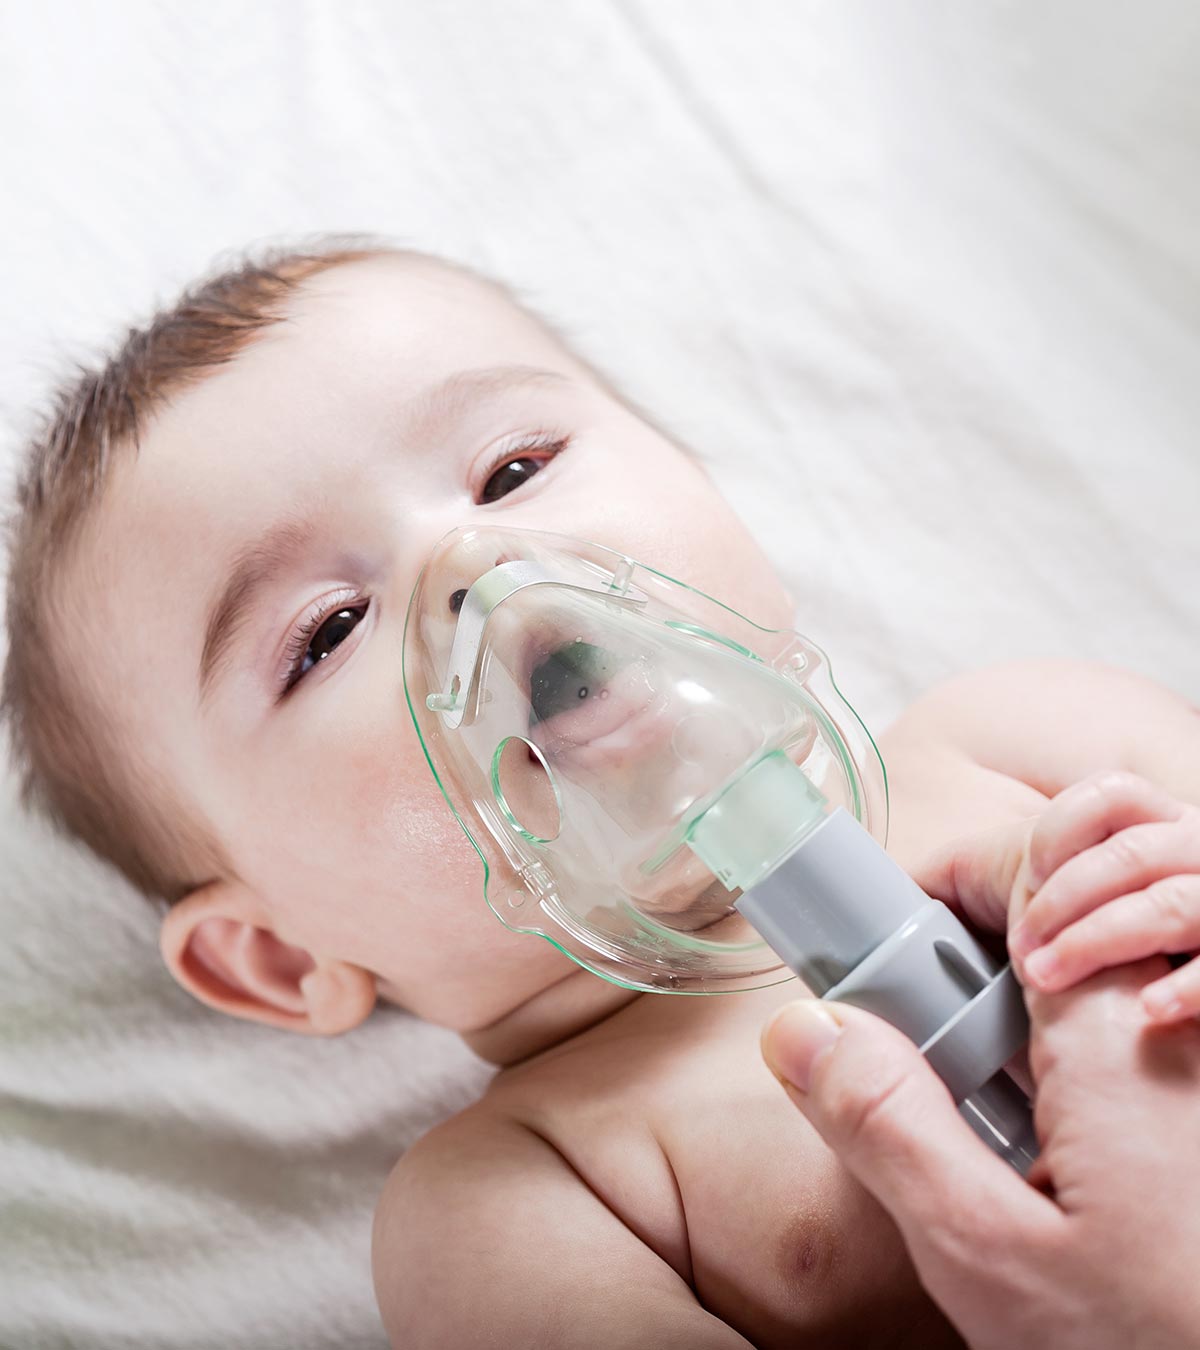 婴儿雾化器:它们是如何工作的?